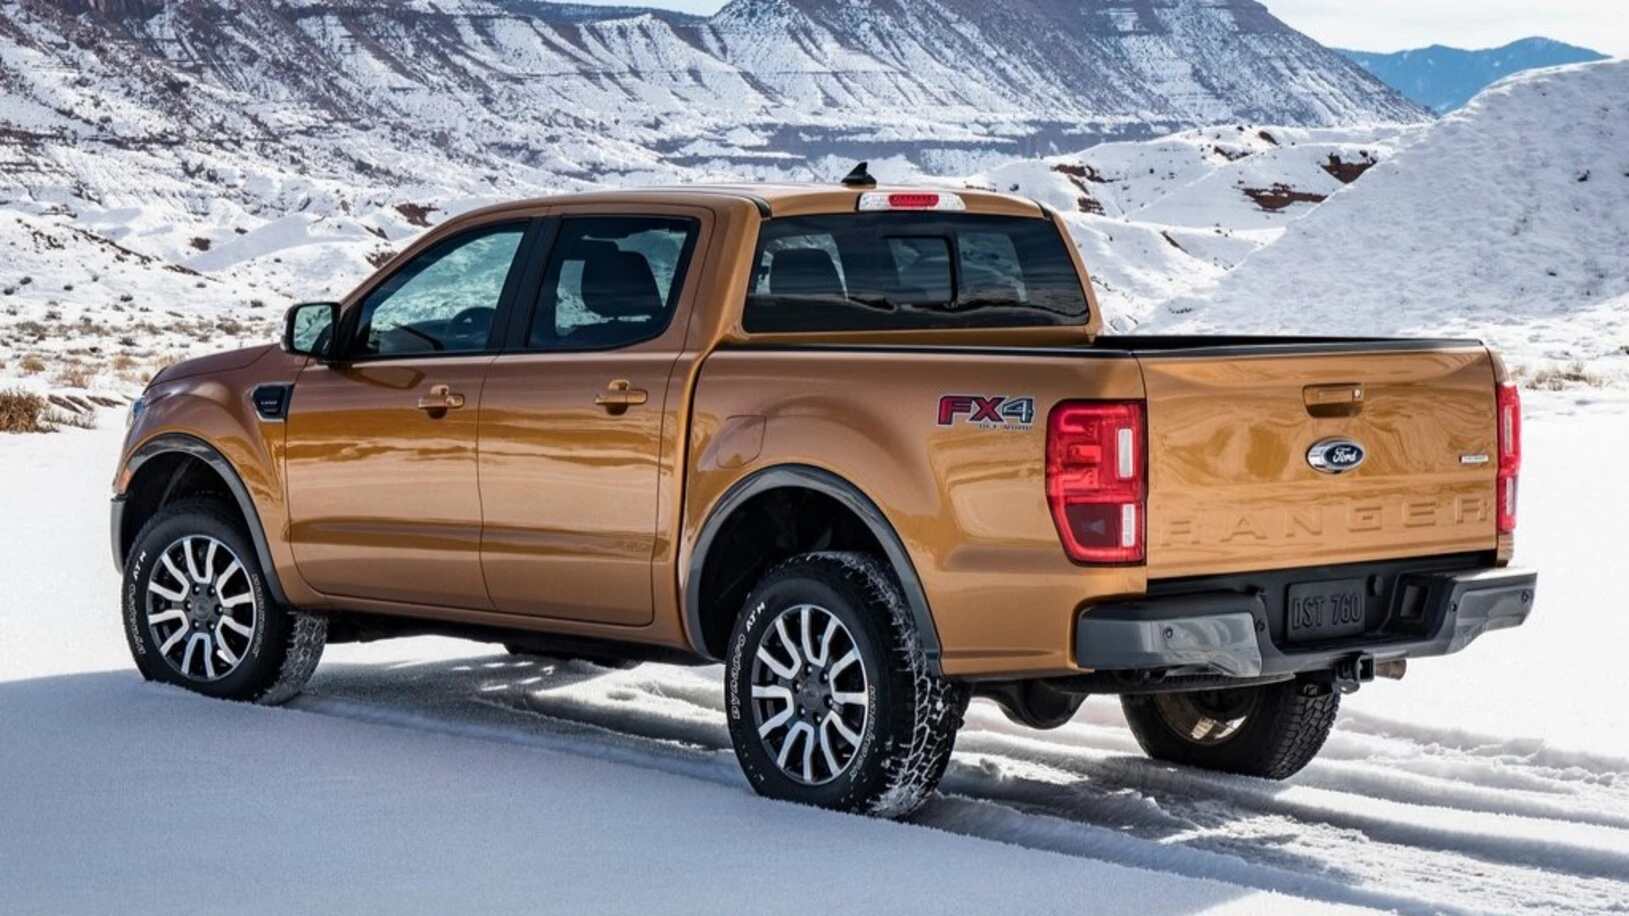 2019 Ford Ranger Image